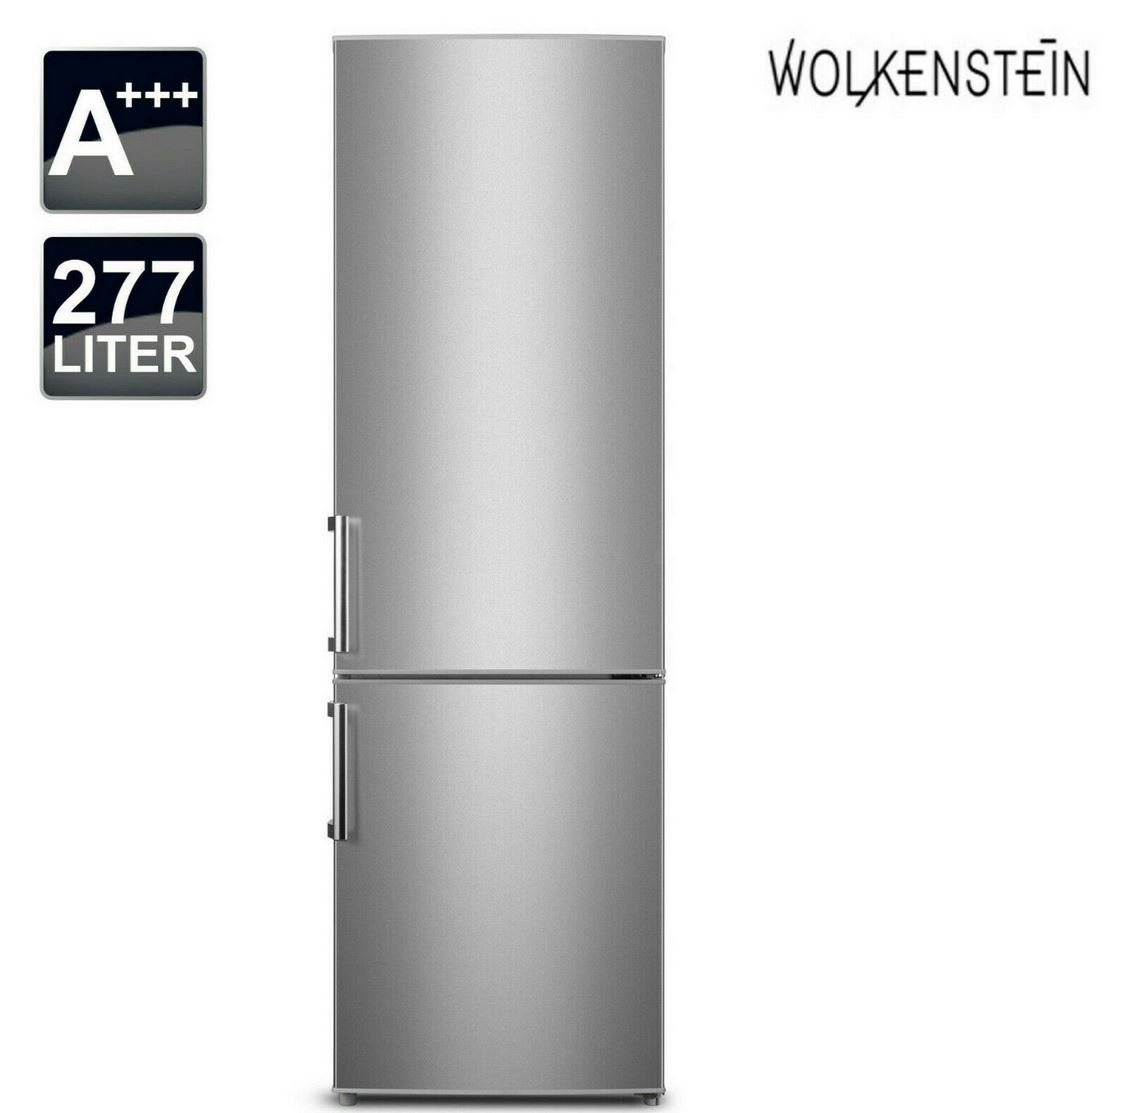 Wolkenstein KGK 280   A+++ Kühl Gefrierkombination 277 L für 319,90€ (statt 360€)